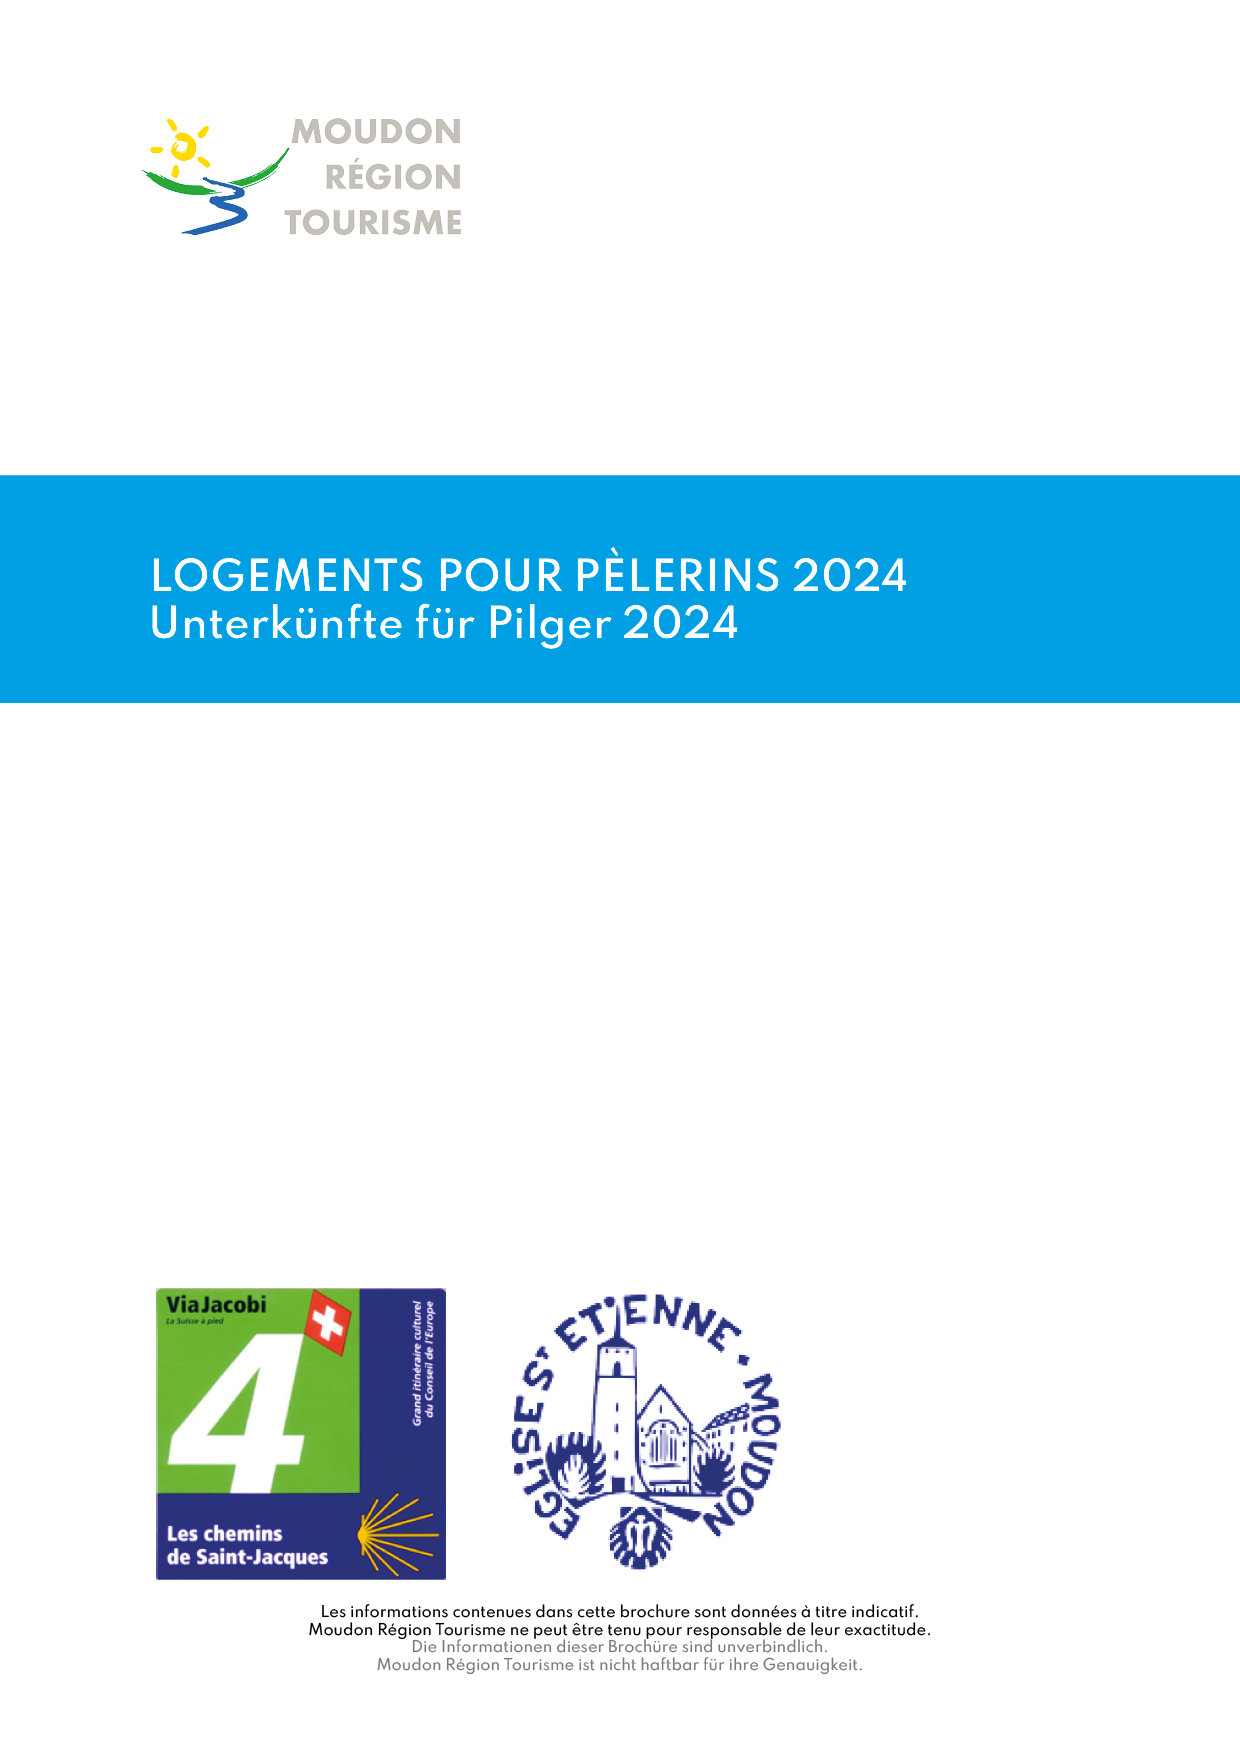 Logement pour pèlerins 2024